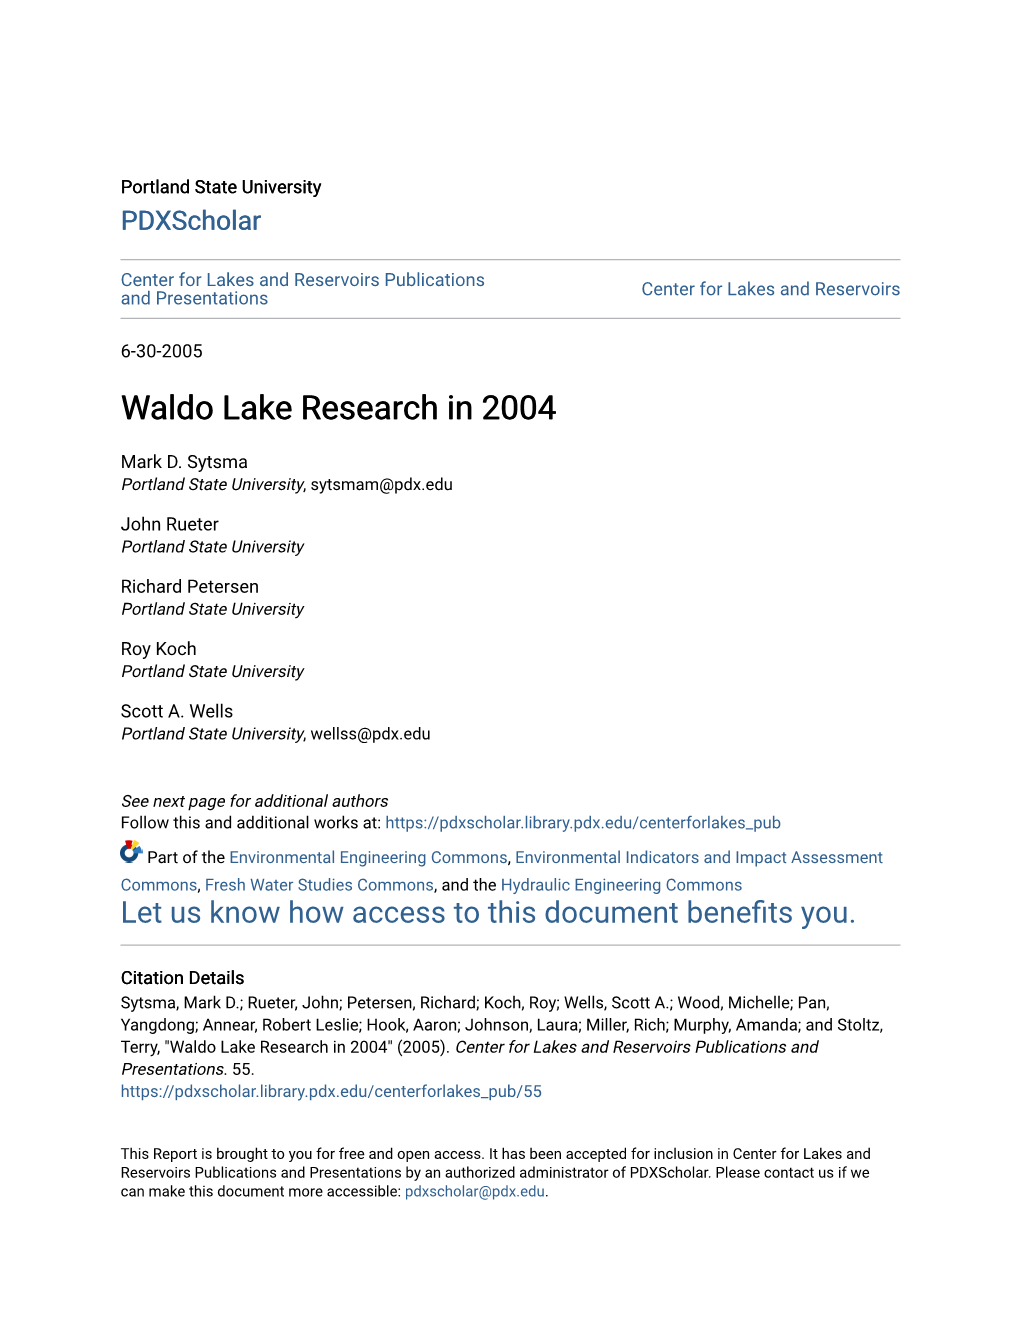 Waldo Lake Research in 2004